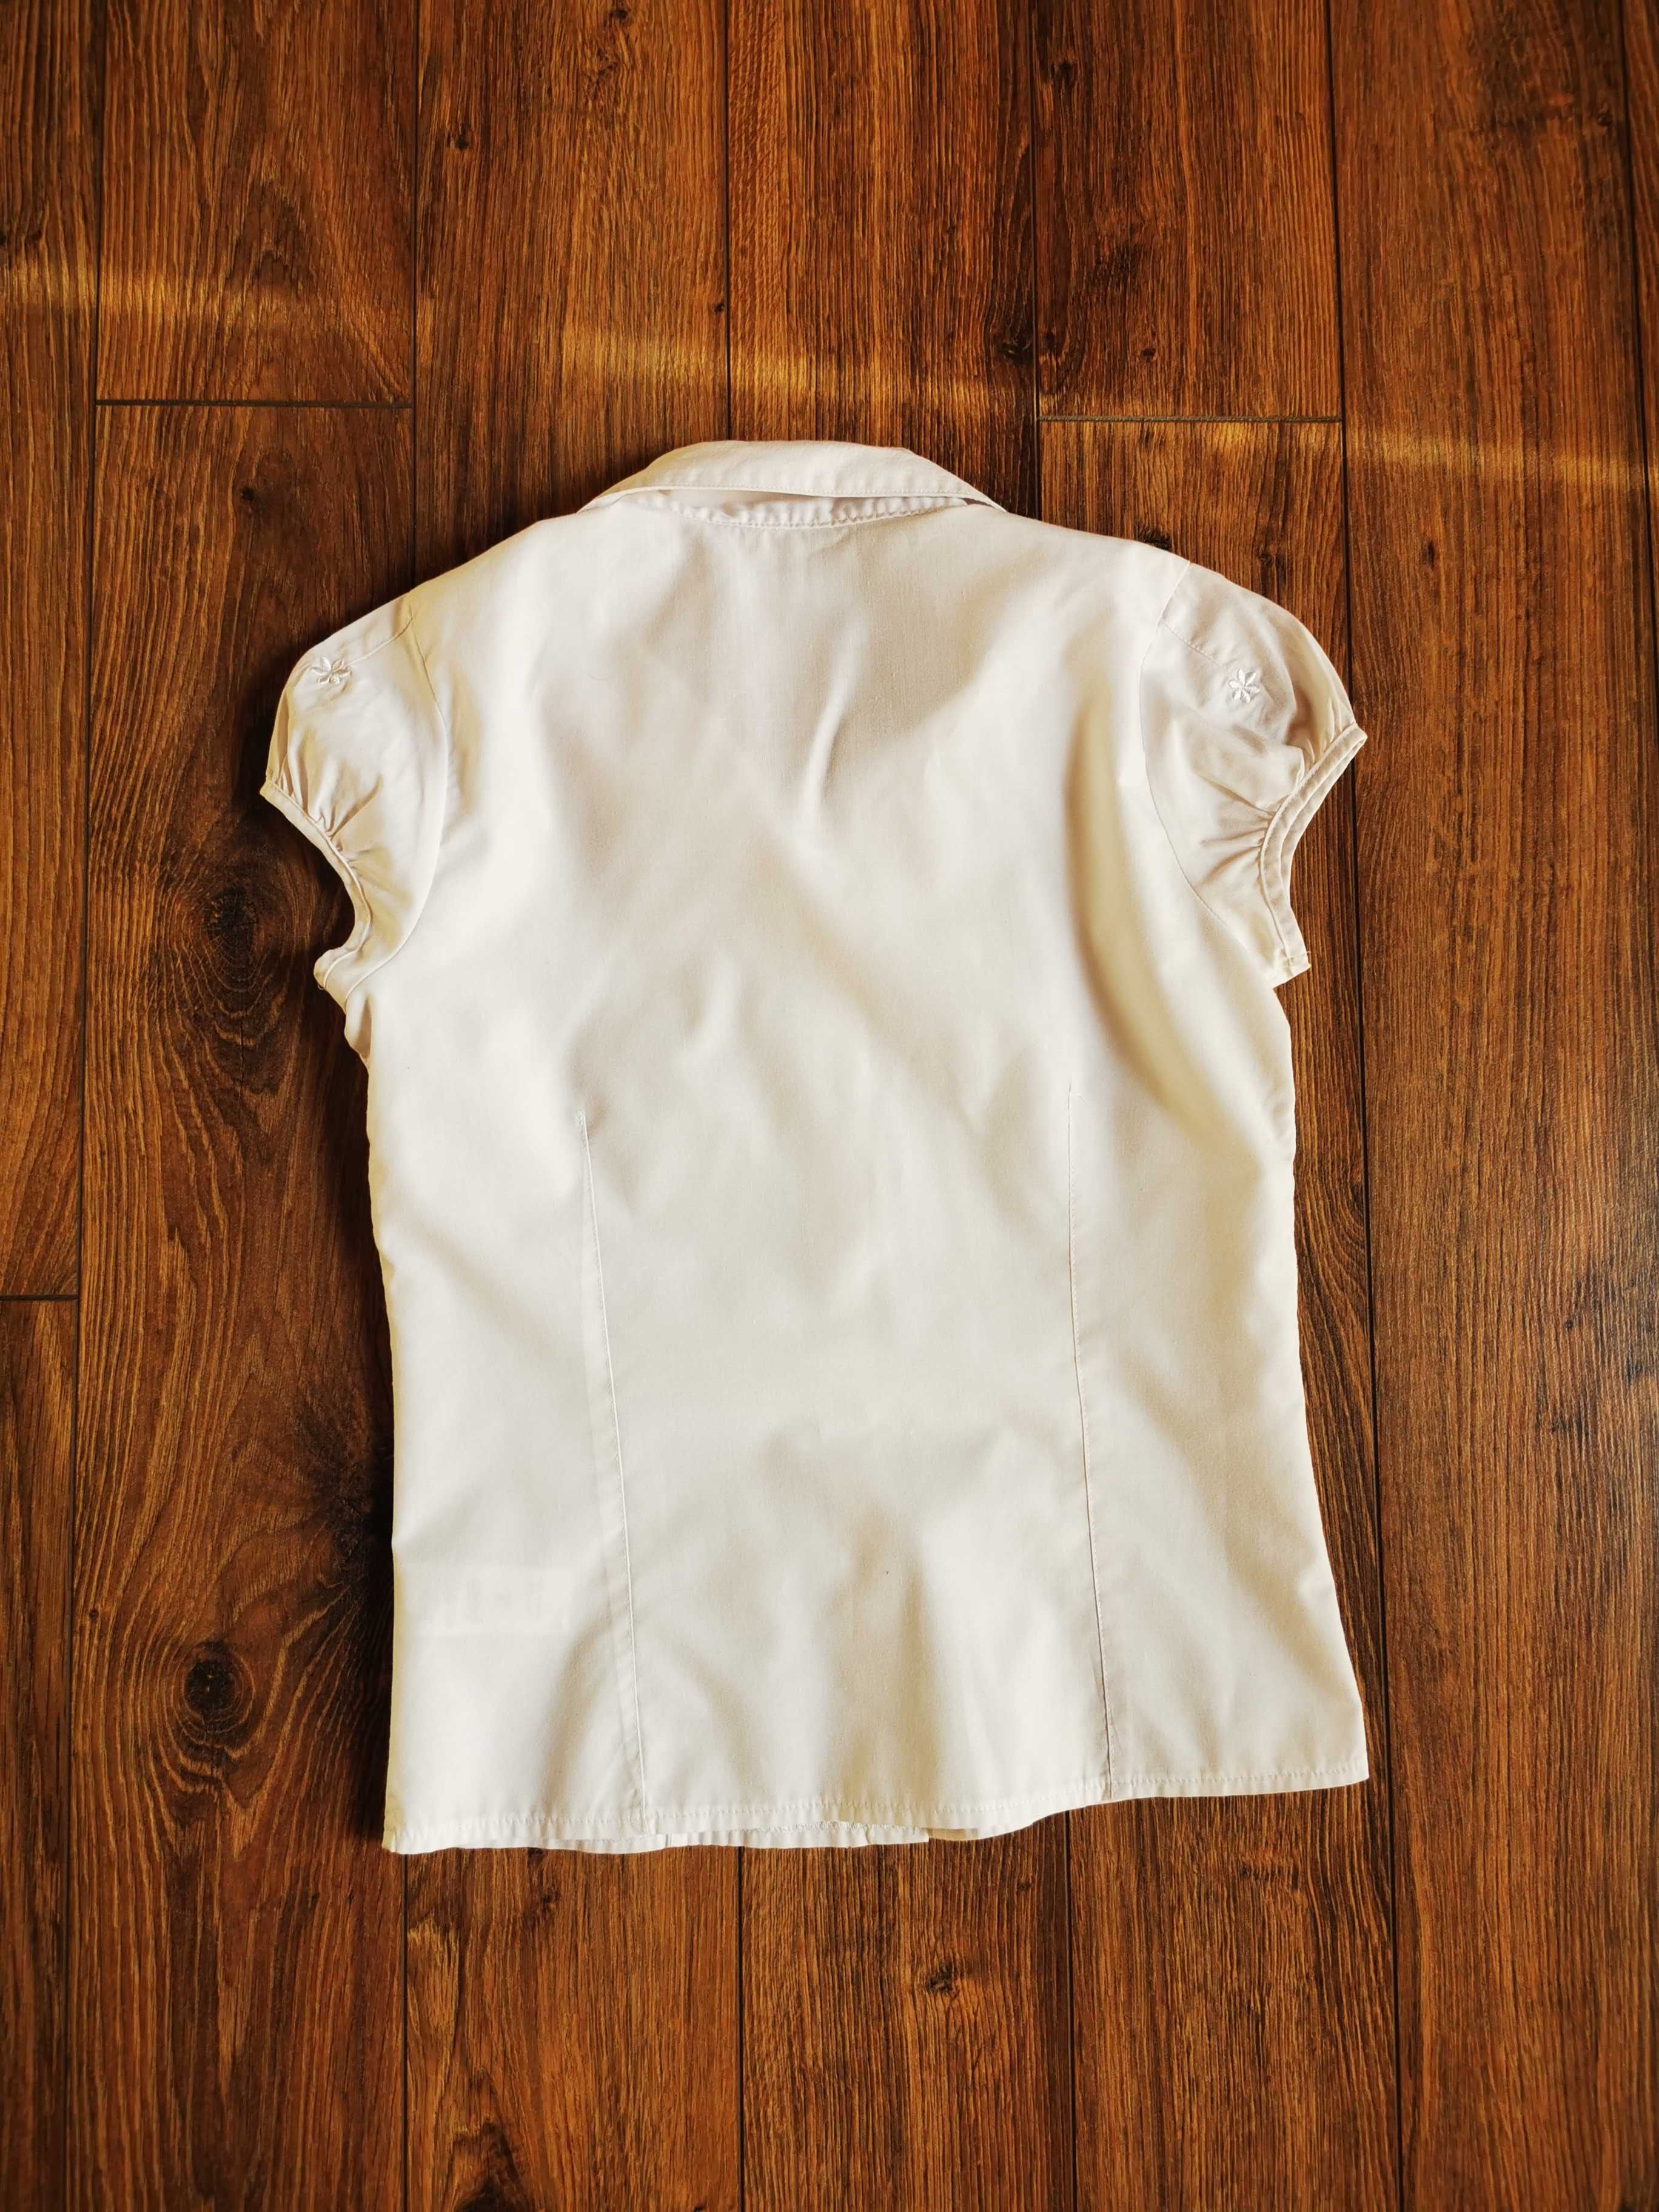 Koszula dla dziewczynki z krótkim rękawem rozmiar 134 cm